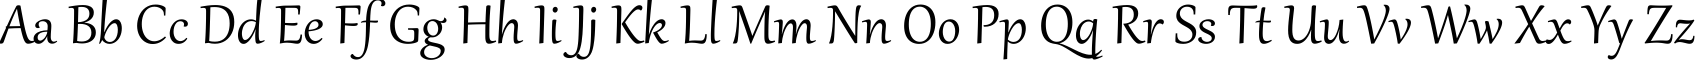 Пример написания английского алфавита шрифтом Gabriola